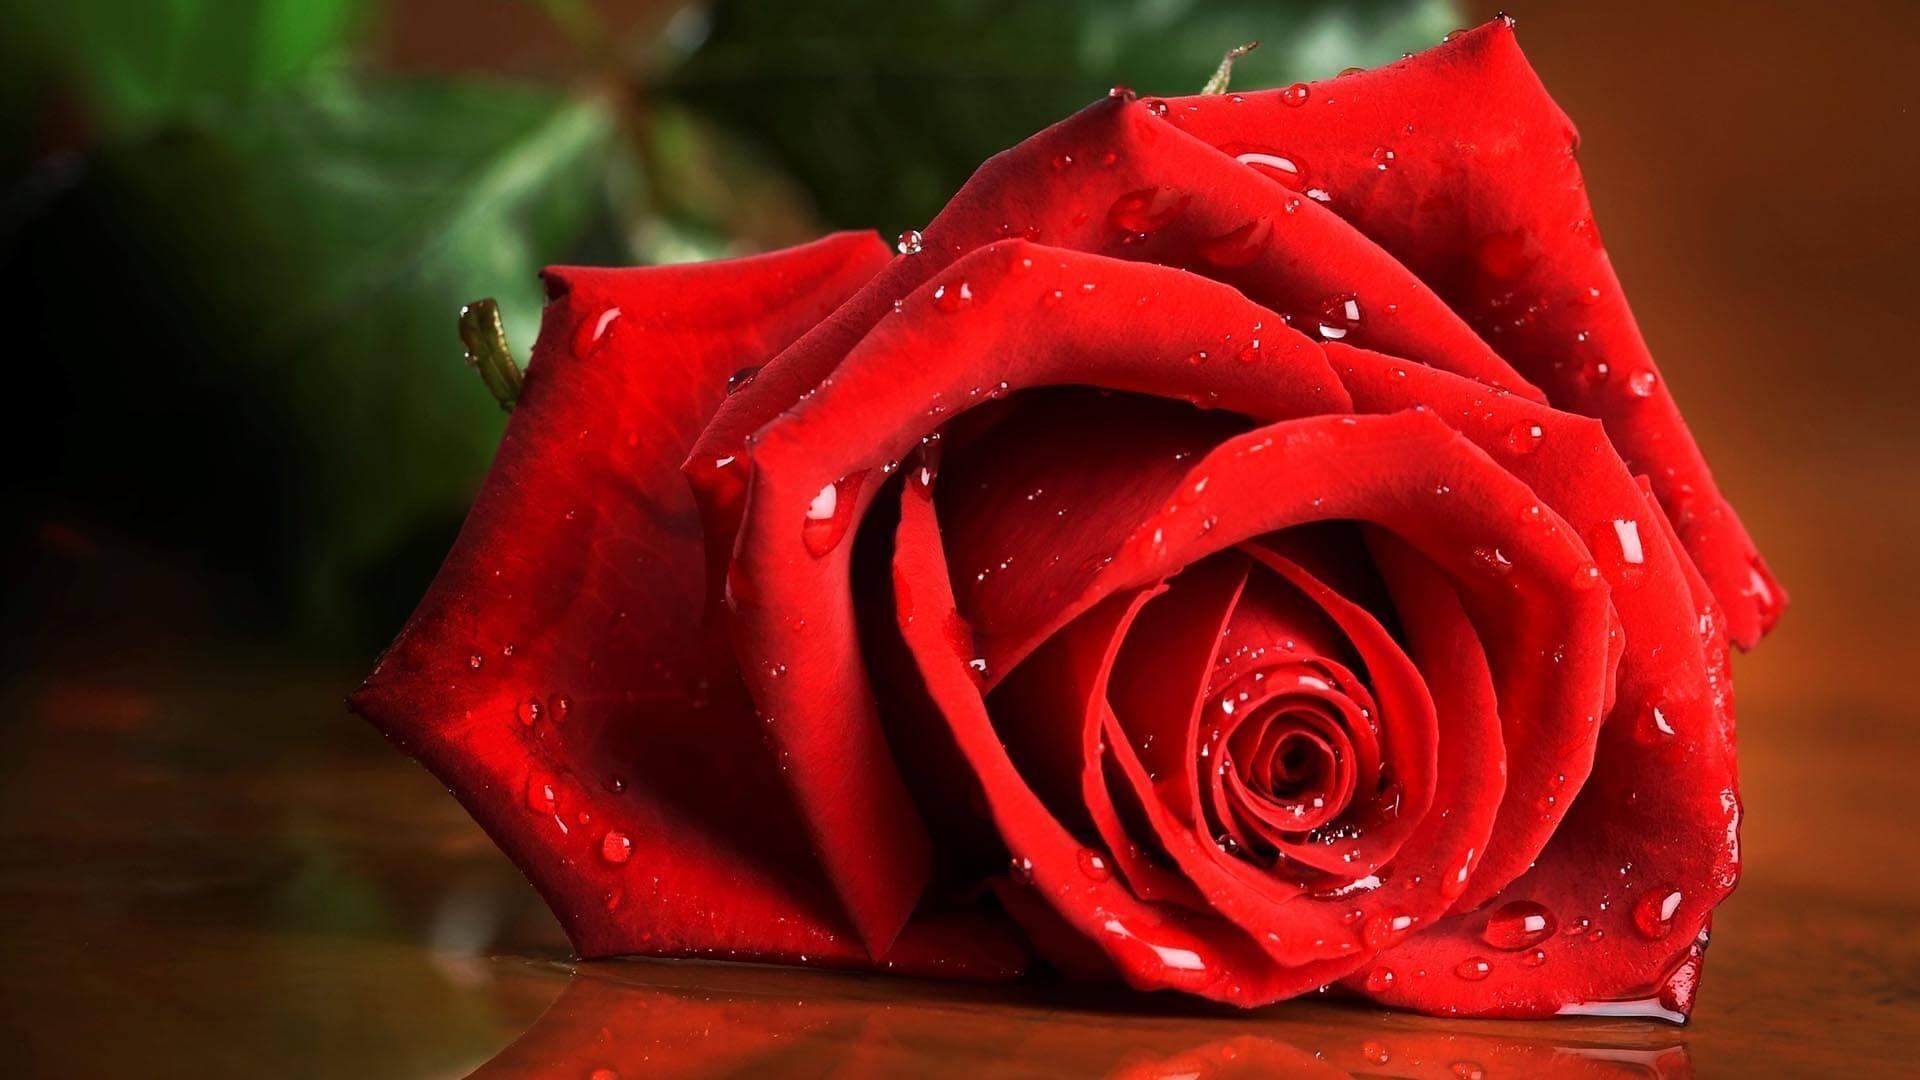 Hoa hồng luôn là món quà yêu thương và sang trọng trong các dịp đặc biệt. Những hình ảnh hoa hồng tuyệt đẹp mà chúng tôi cung cấp sẽ giúp bạn tưởng tượng ra những ý tưởng trang trí hoàn hảo cho ngày lễ, sự kiện quan trọng hoặc nét đẹp tự nhiên đầy lôi cuốn của hoa hồng.